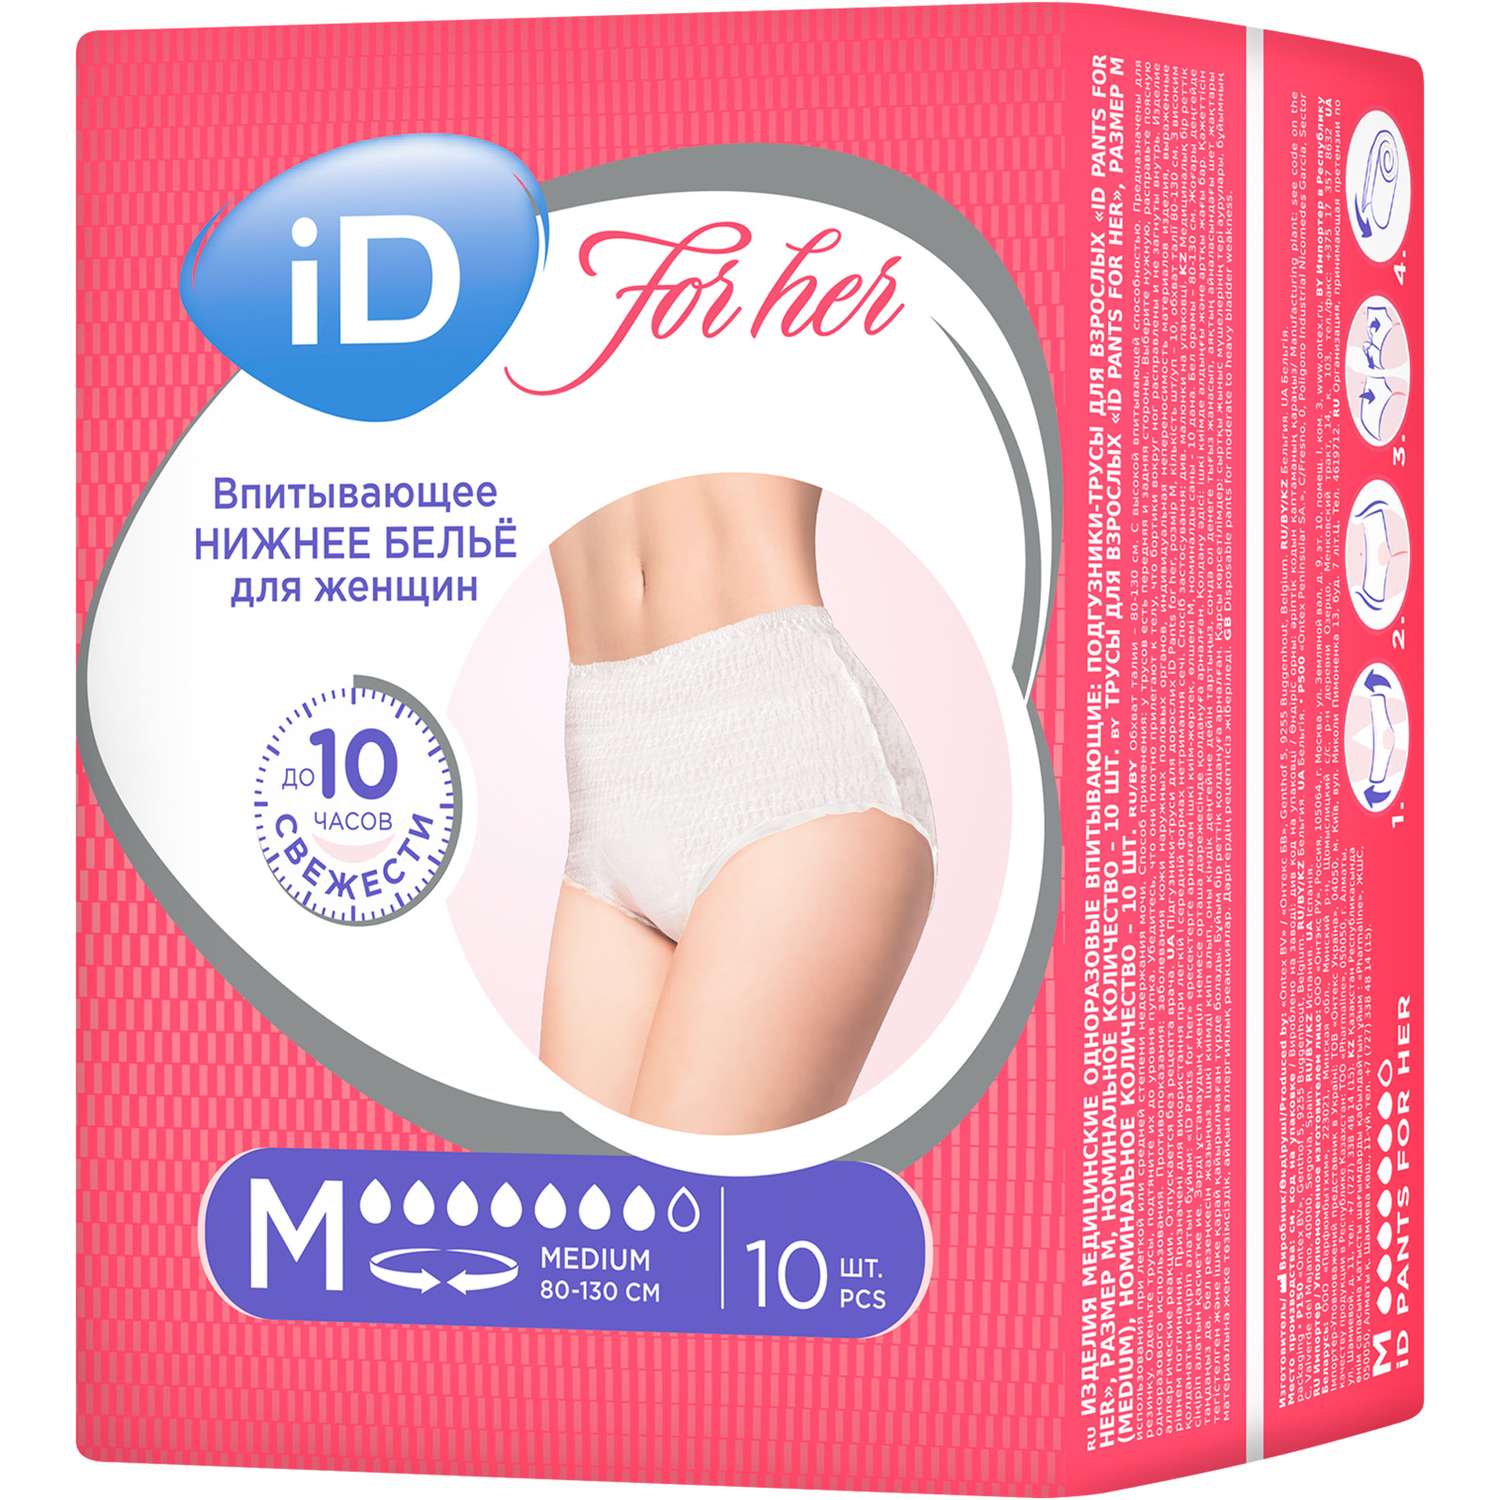 Впитывающие трусы для женщин iD PANTS For Her M 10 шт - фото 2